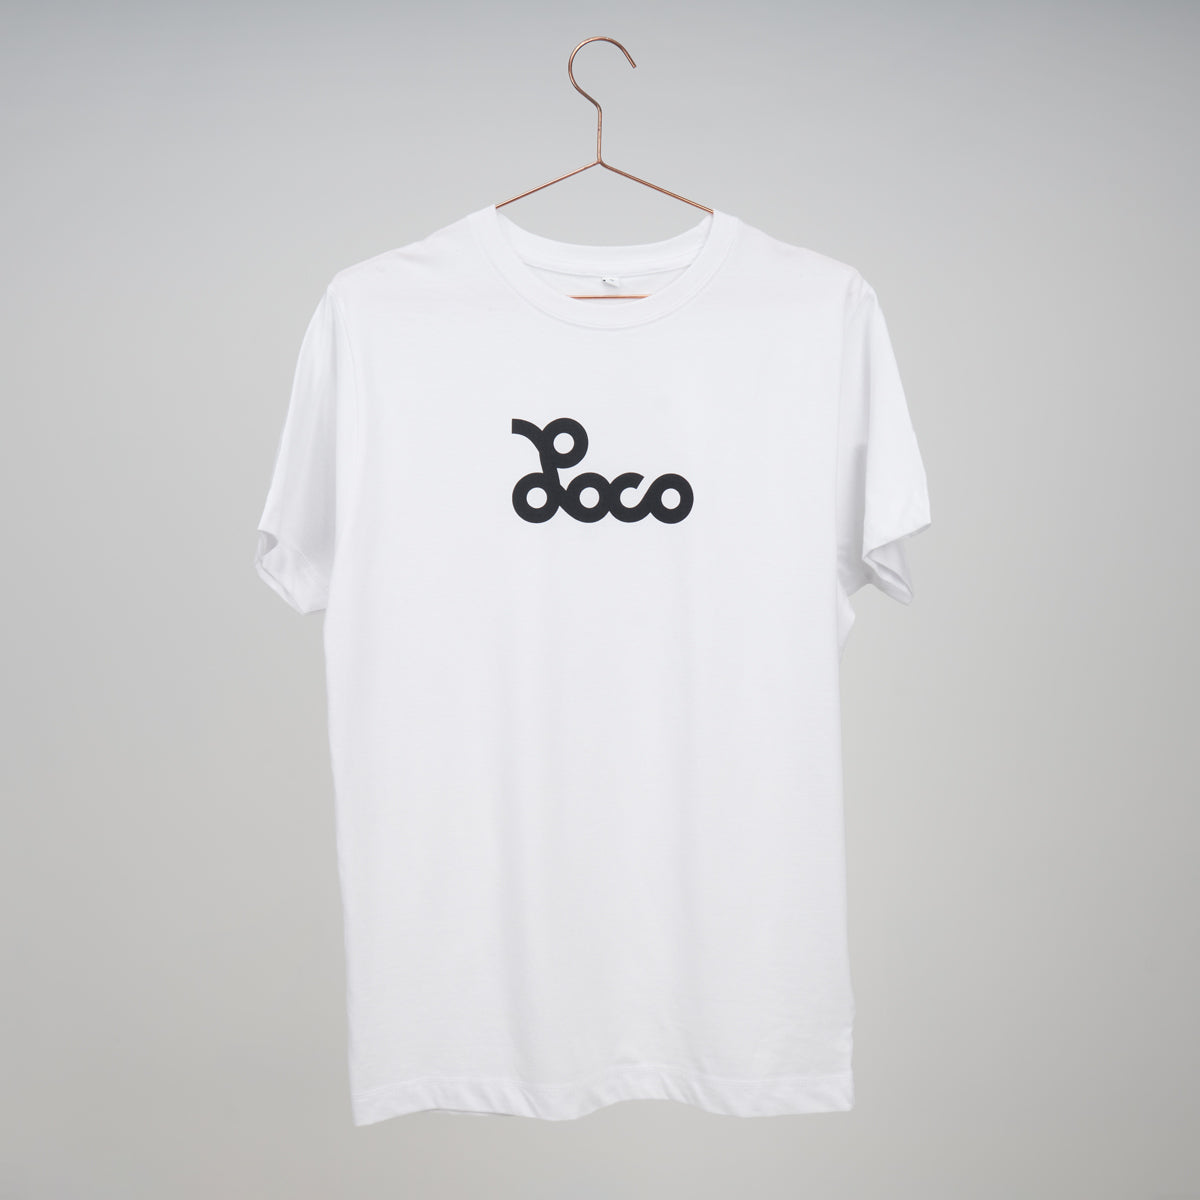 Loco T-Shirt - White